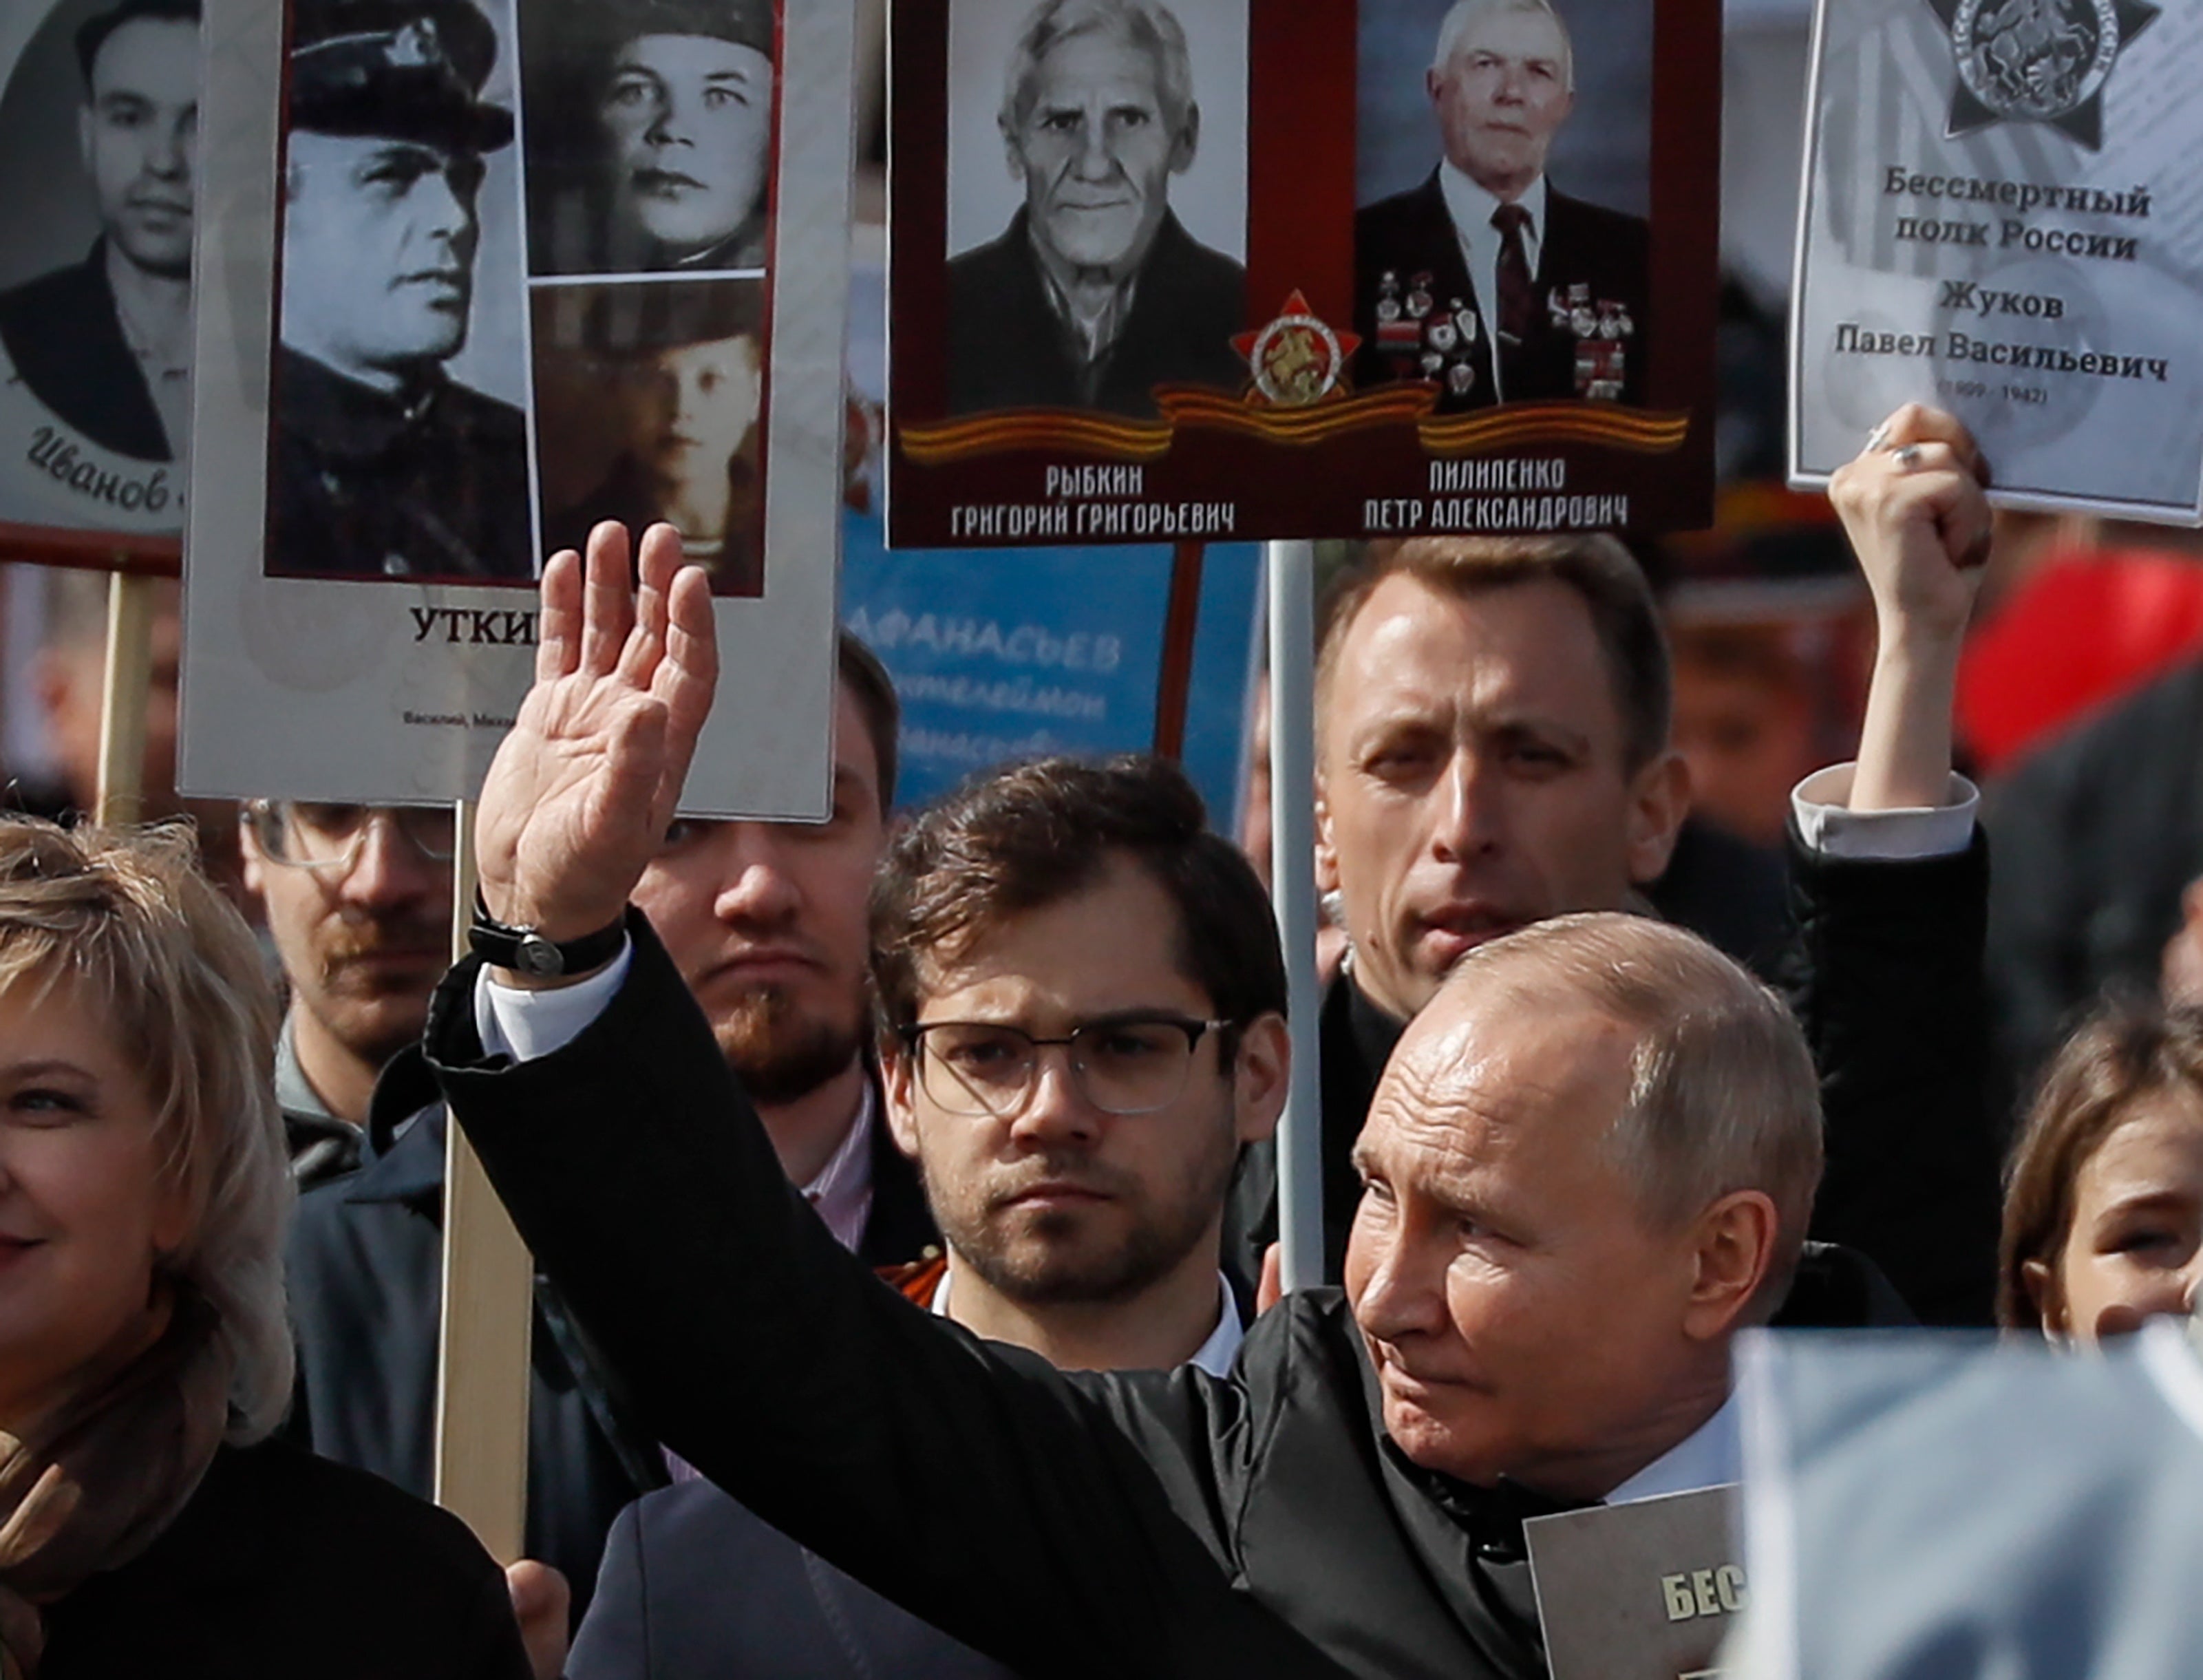 Russia conmemora el Día de la Victoria, la rendición incondicional de la Alemania nazi en la Segunda Guerra Mundial. Se hace un desfile anual en la Plaza Roja de Moscú